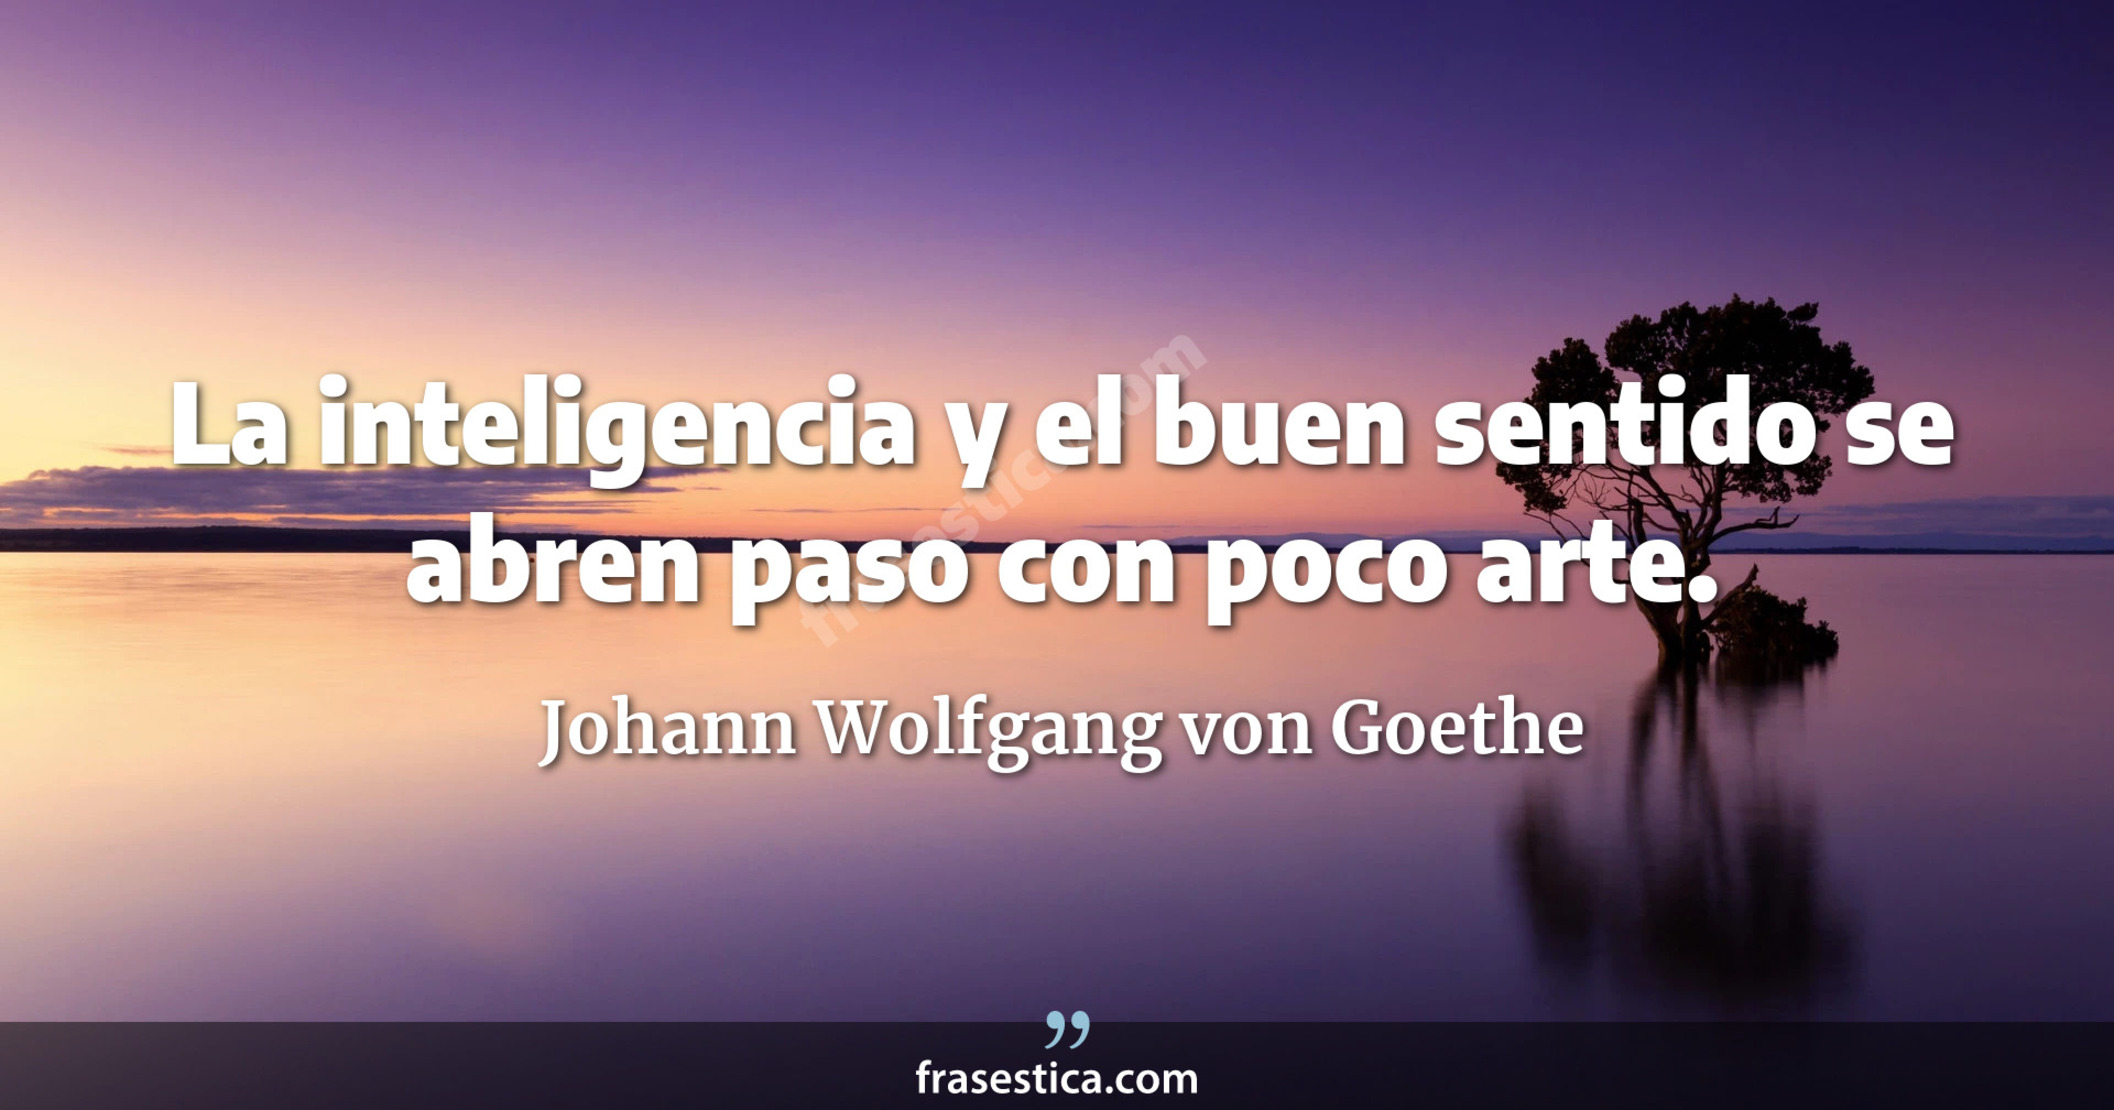 La inteligencia y el buen sentido se abren paso con poco arte. - Johann Wolfgang von Goethe